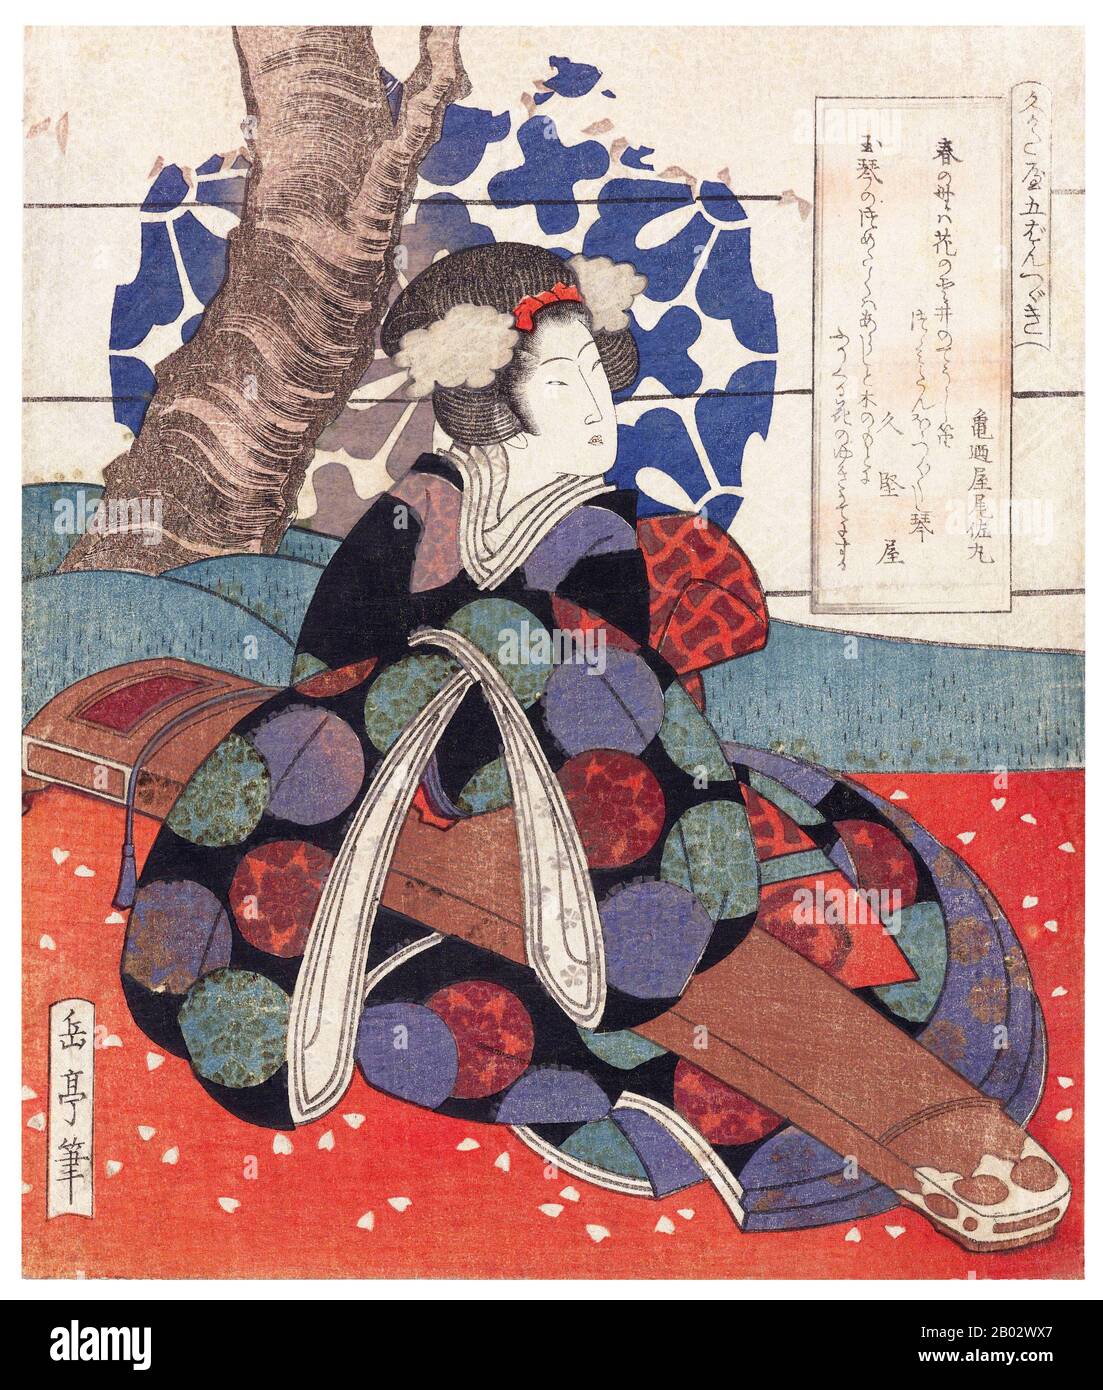 Yashima Gakutei era un artista e poeta giapponese che era allievo sia di Totoya Hokkei che di Hokusai. Gakutei è meglio conosciuto per la sua poesia kyoka e le sue opere di legno surimono. Foto Stock